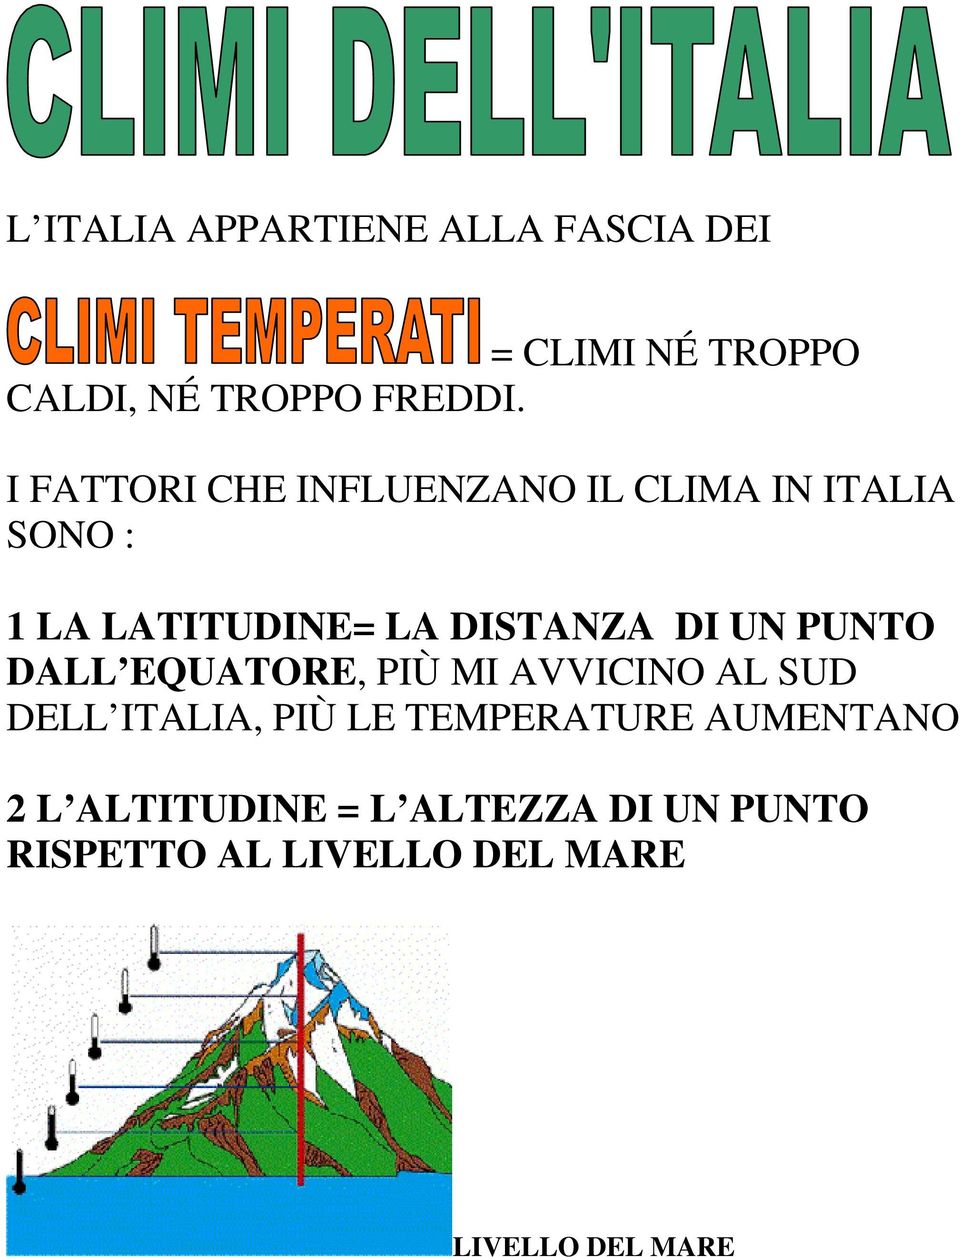 UN PUNTO DALL EQUATORE, PIÙ MI AVVICINO AL SUD DELL ITALIA, PIÙ LE TEMPERATURE